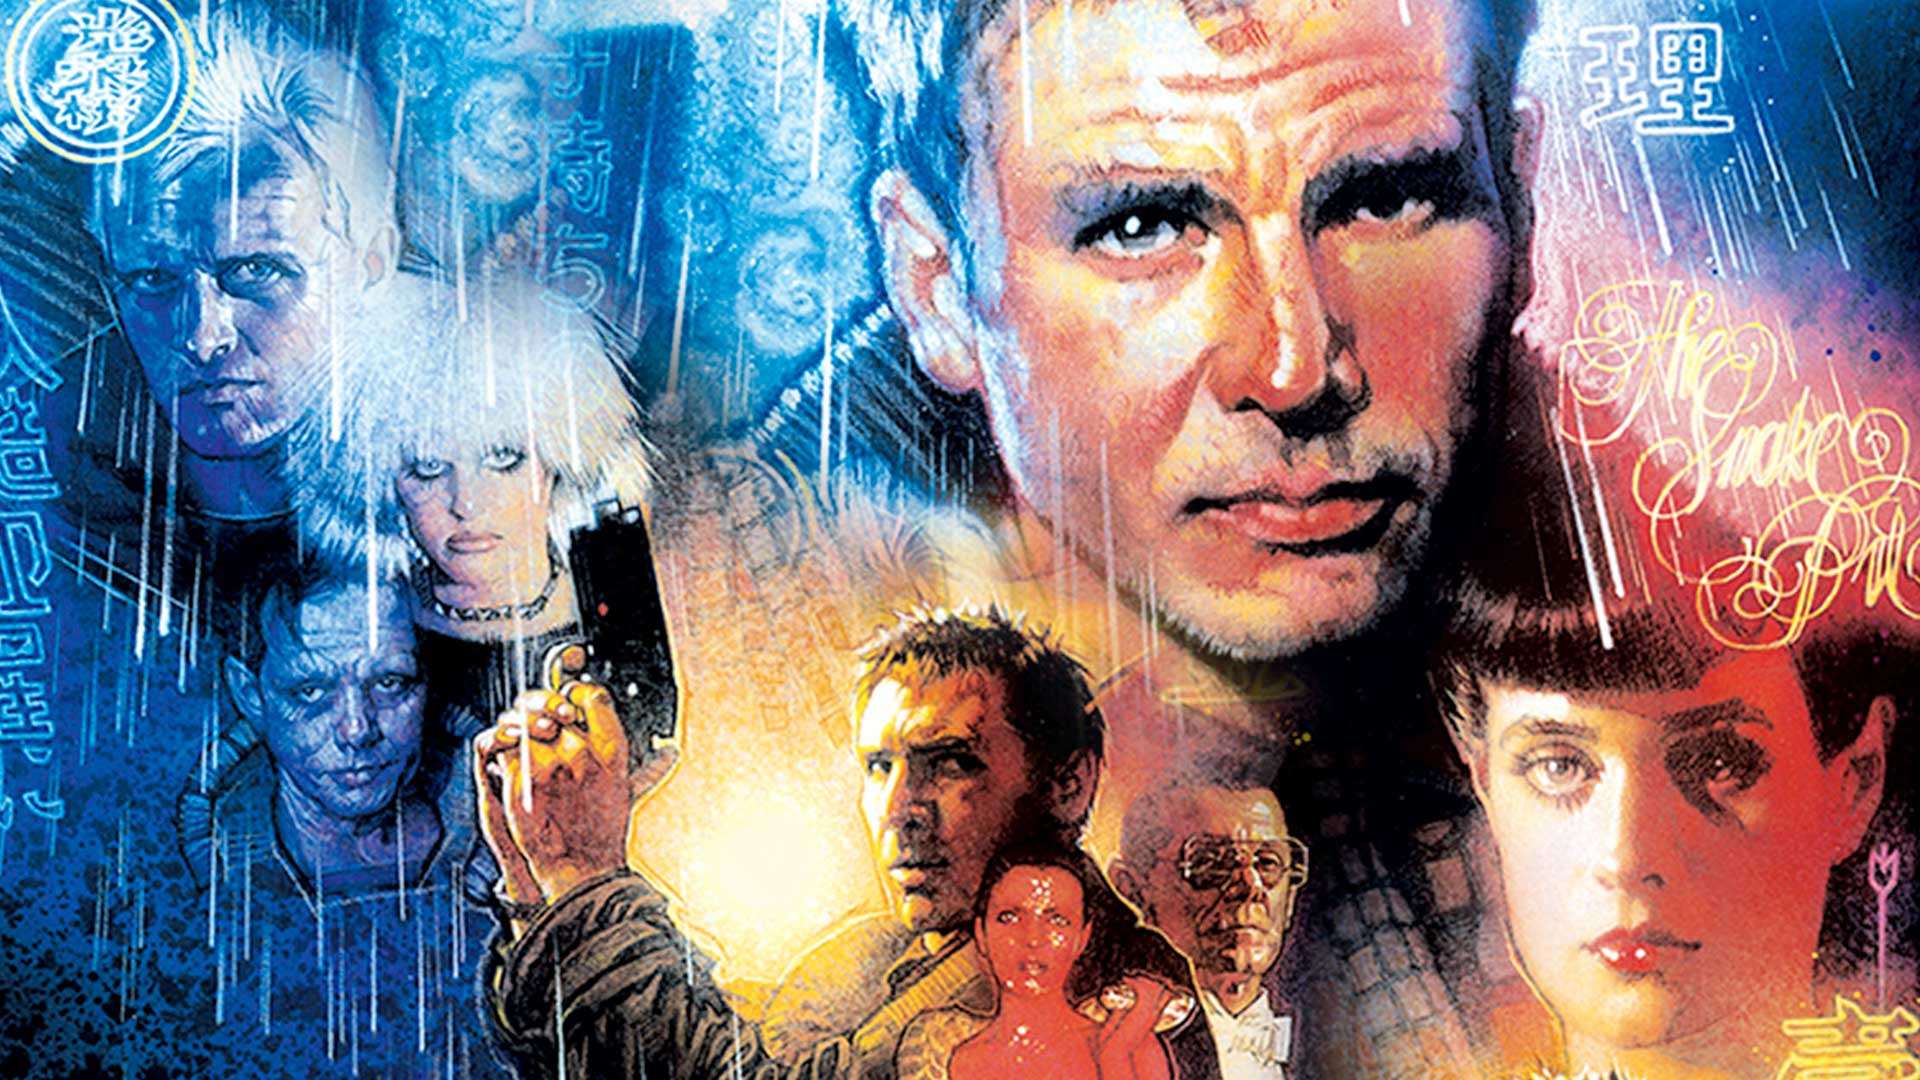 Blade Runner: The Final Cut (1982)